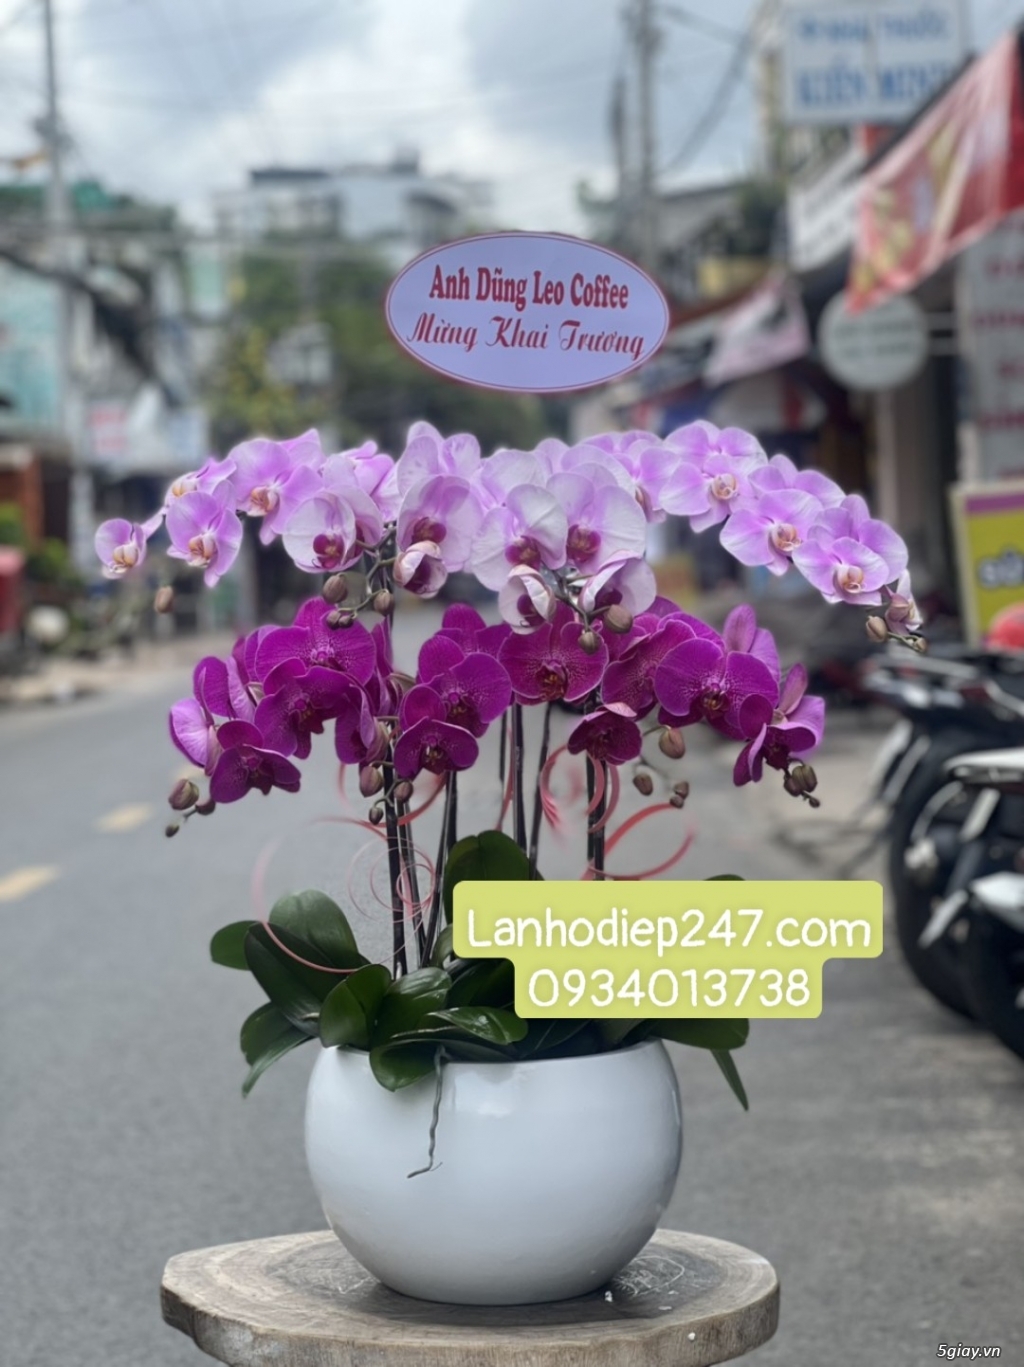 Bạn muốn tìm Shop Lan Hồ Điệp cao cấp TPHCM - Shop Hoa Lan 247 Sài Gòn - 12